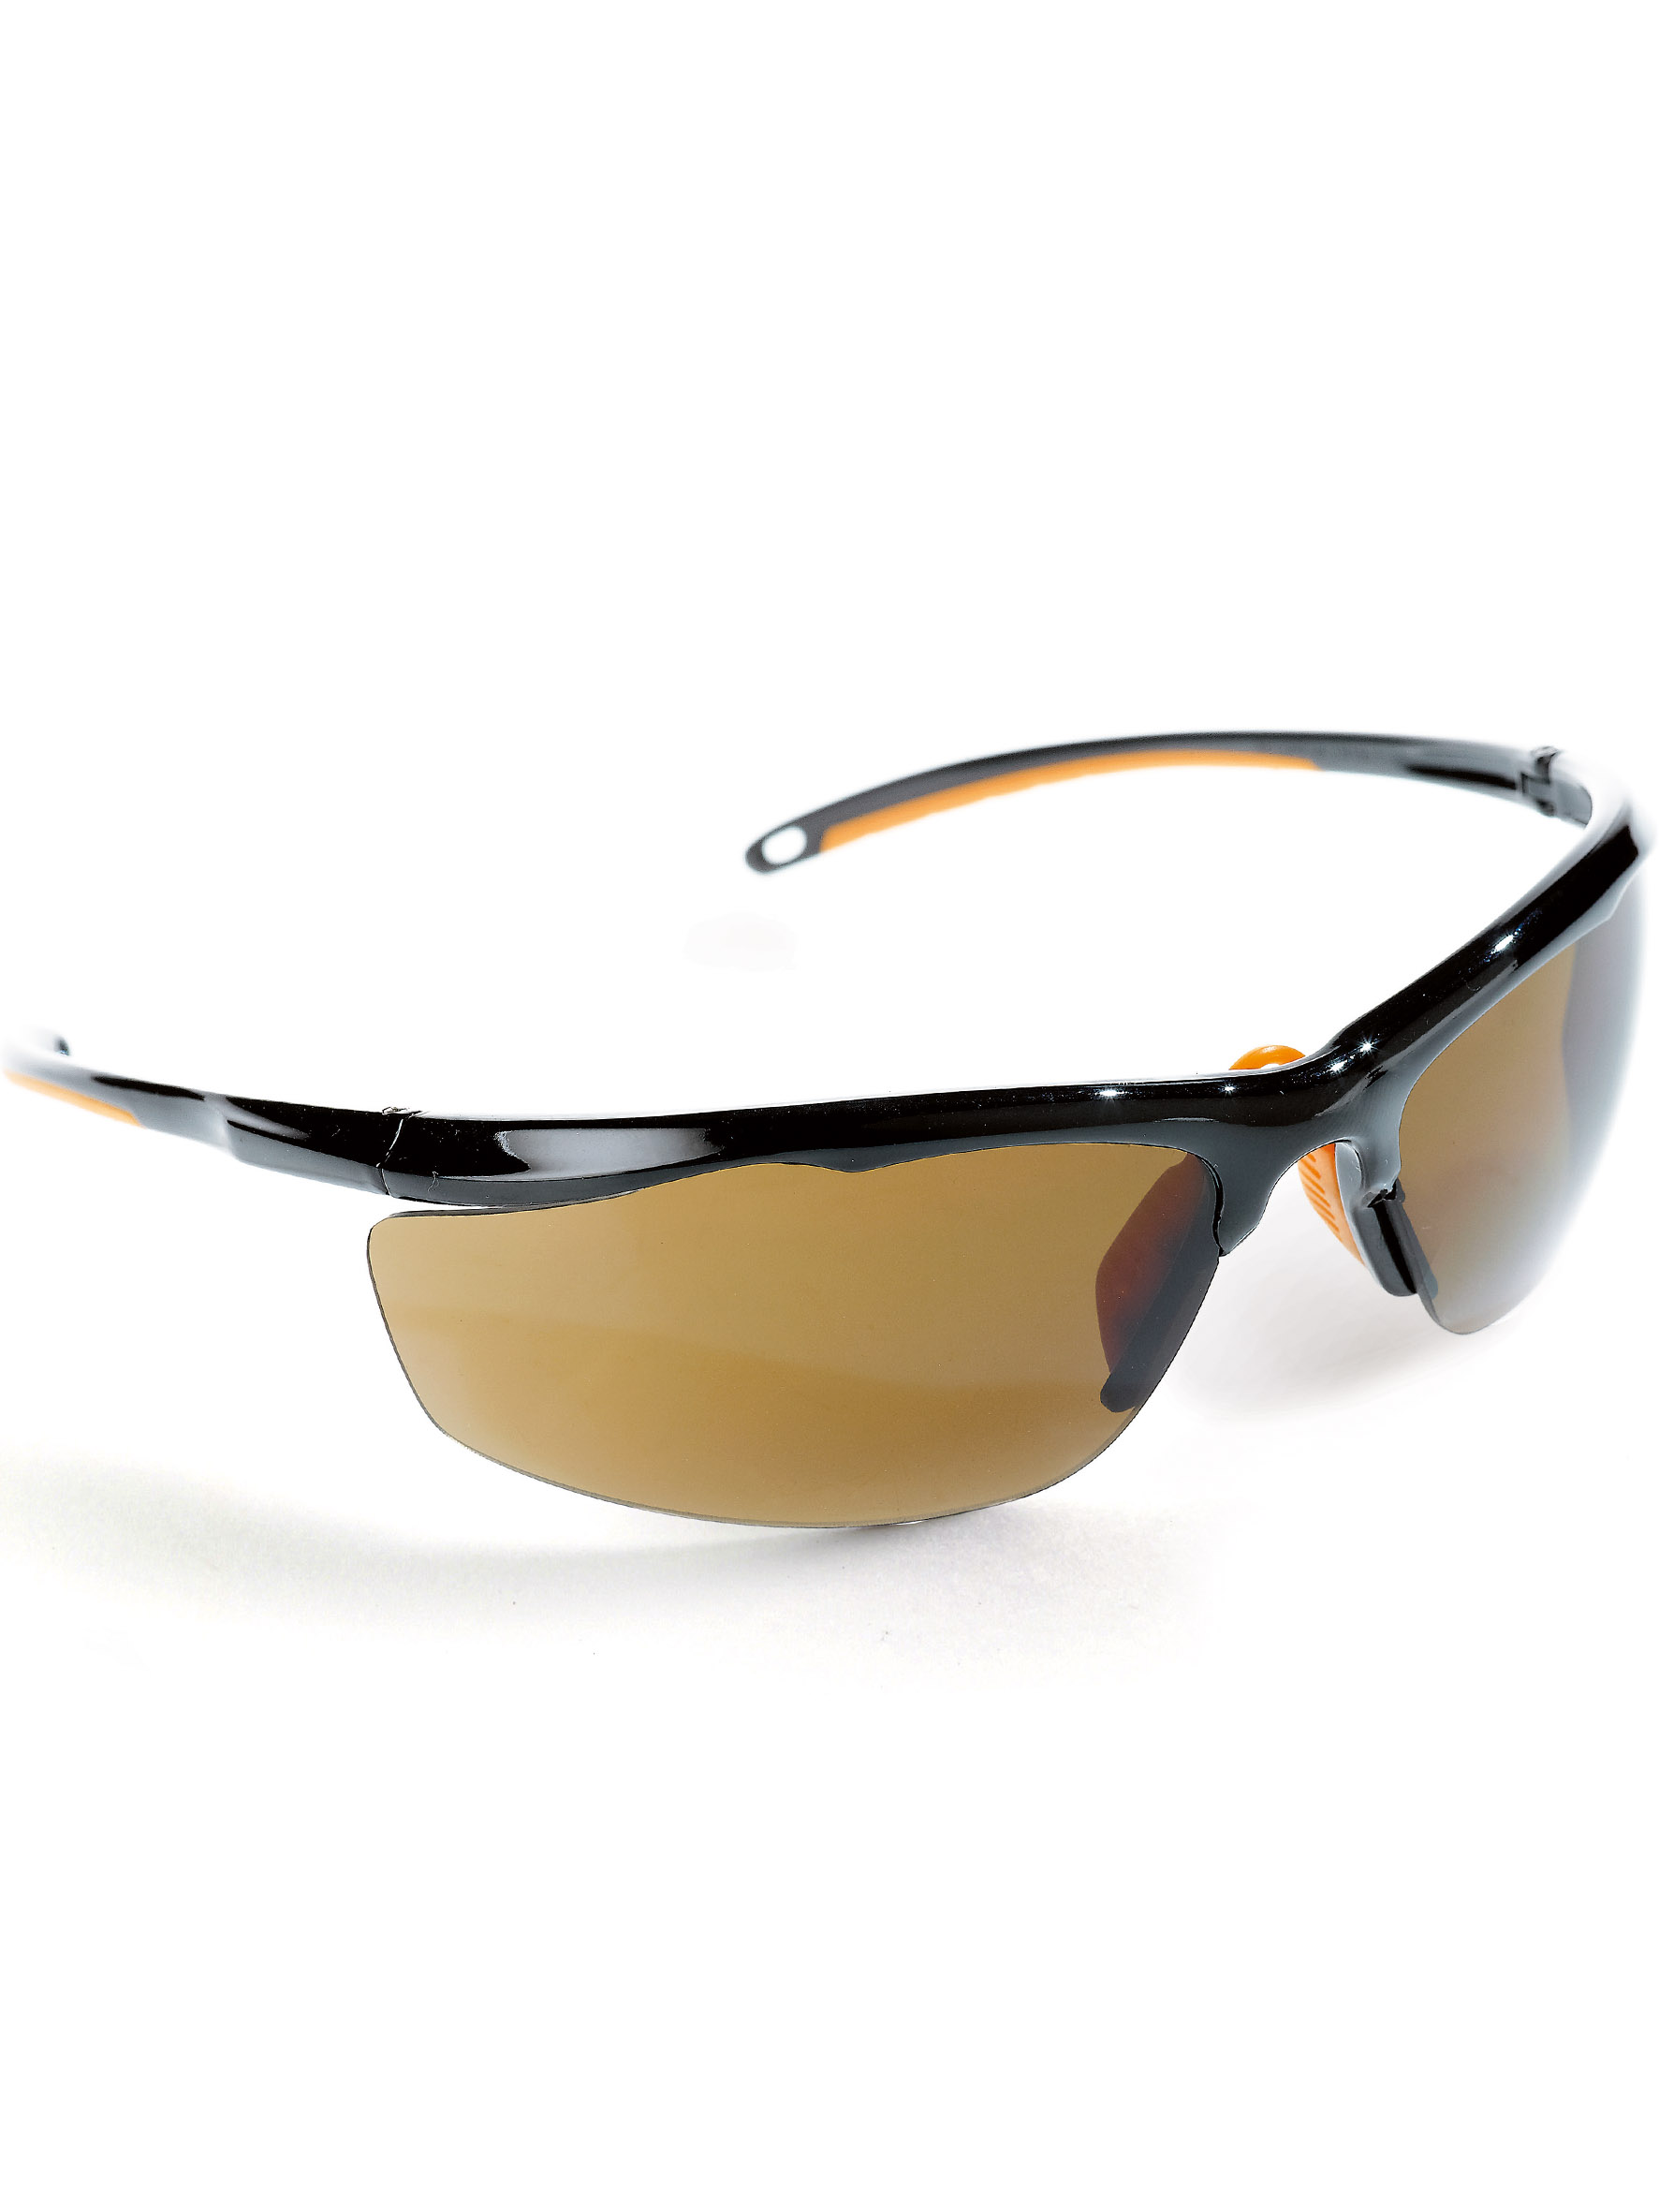 Artikel Sonnenbrille. Getönte Sichtscheibe. Farbton 5-3.1 (EN172).  Ultrafein und leicht